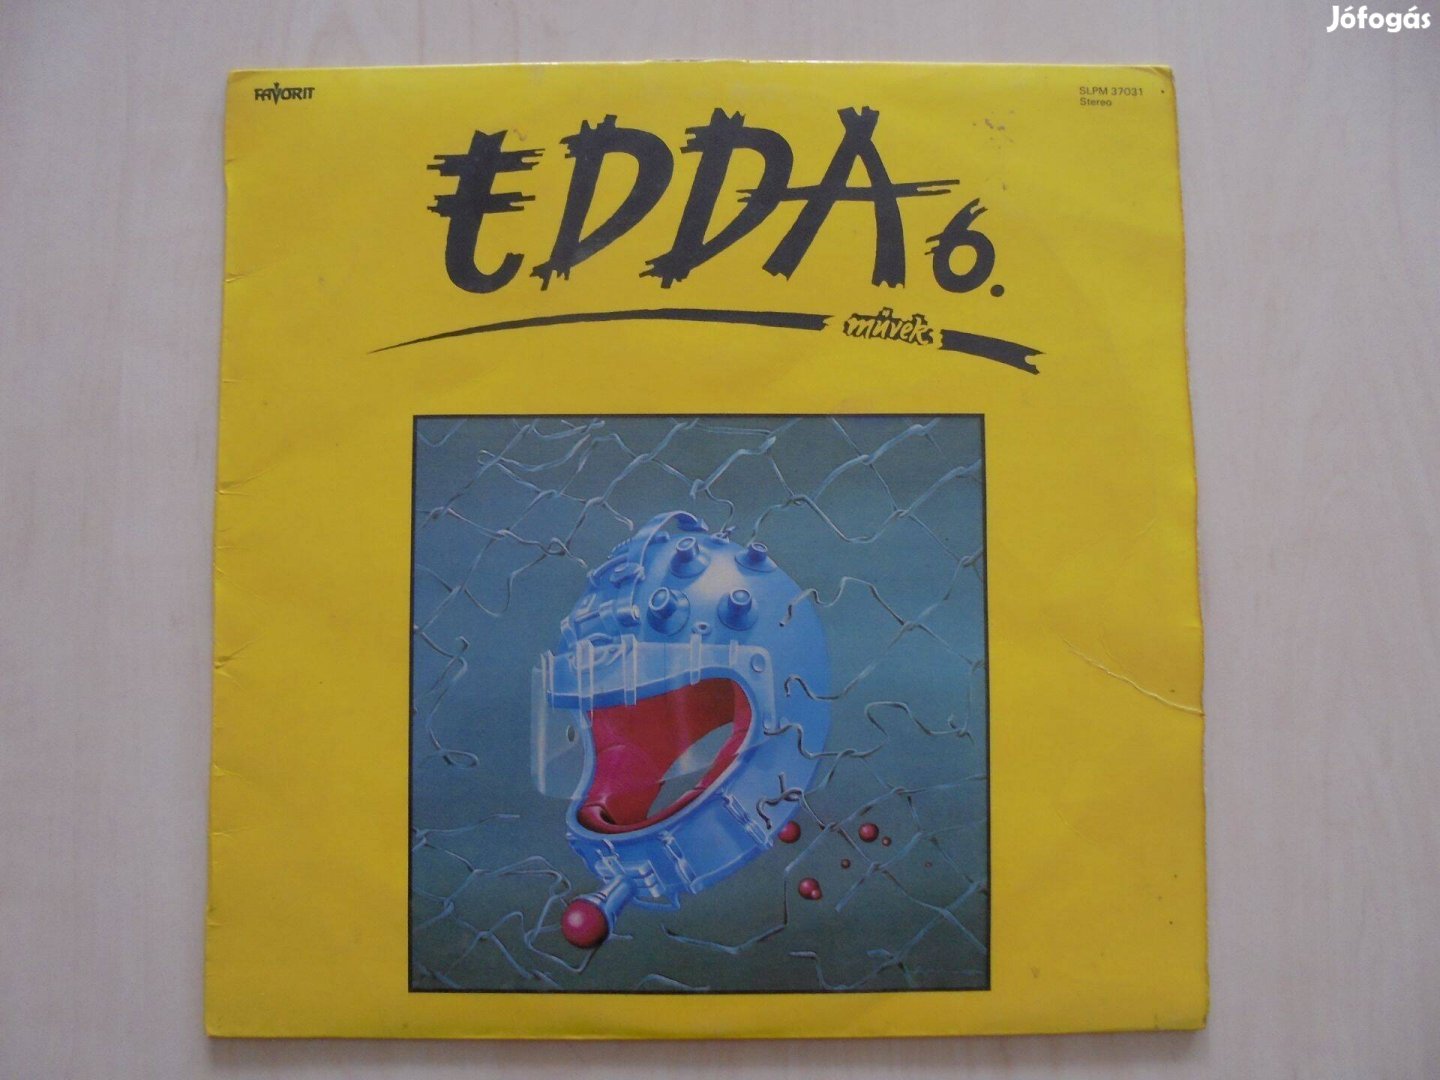 Edda 6. retro bakelit nagylemez LP 1986